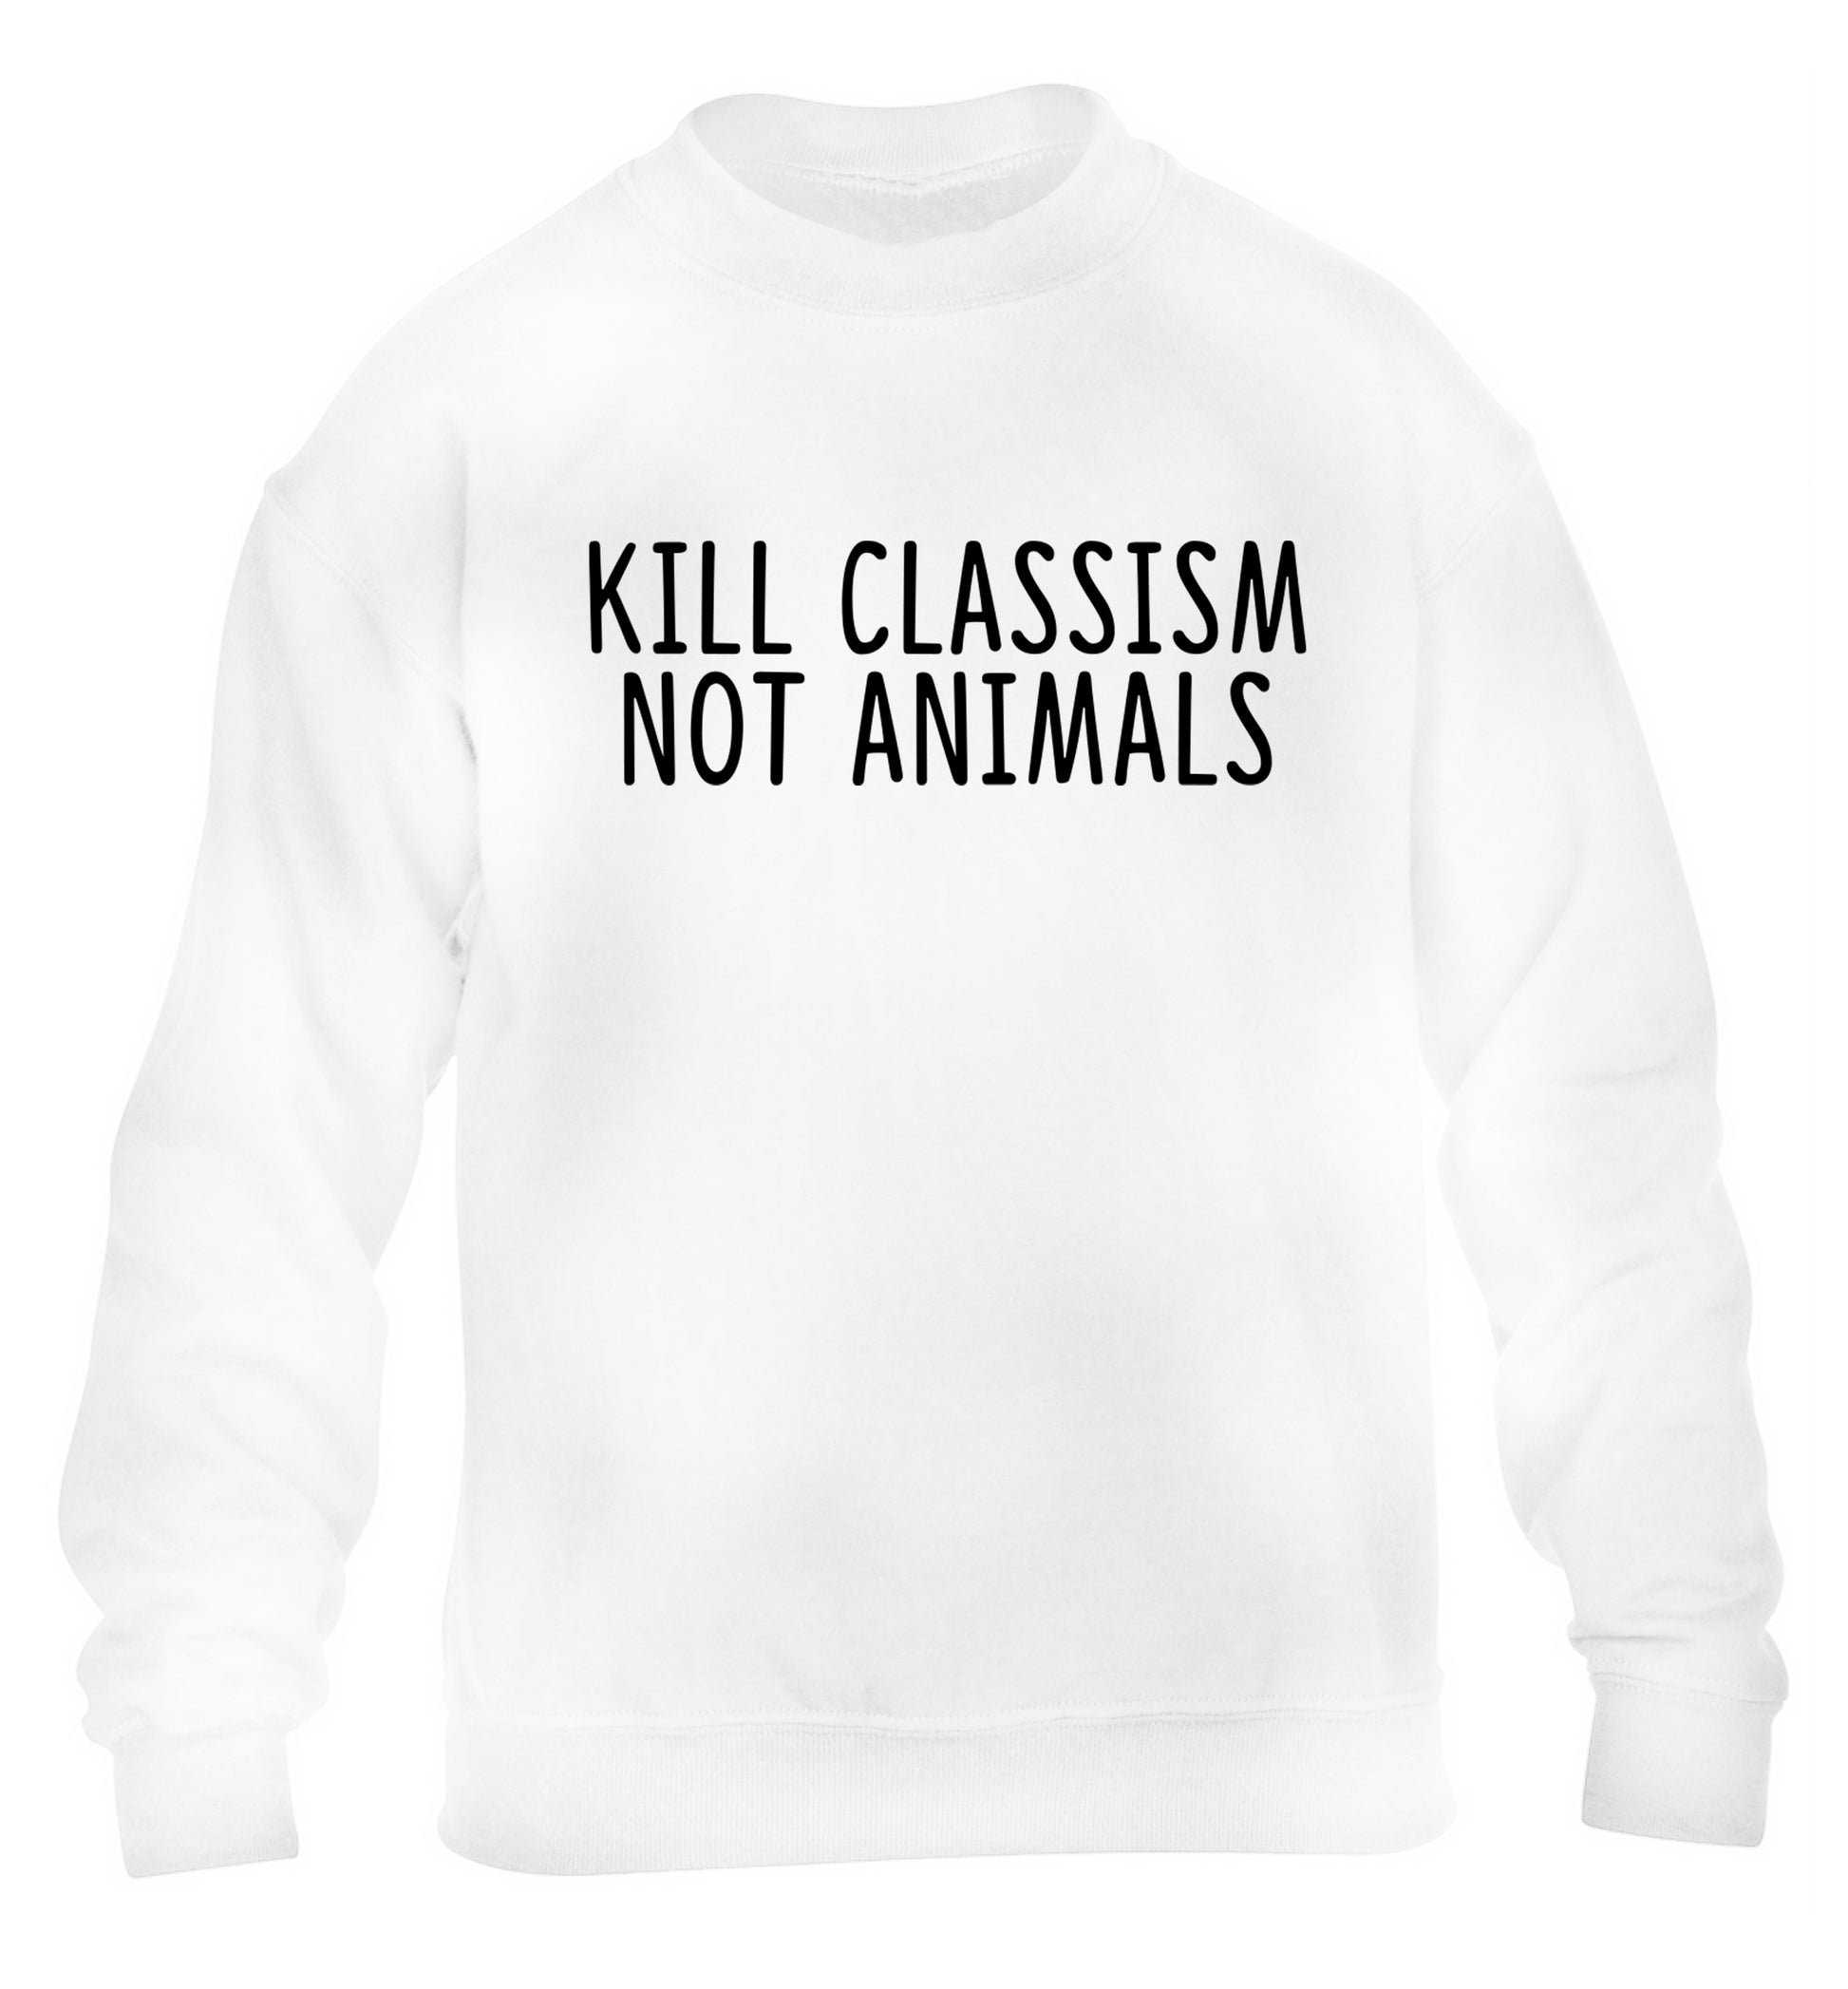 Kill Classism Not Animals children's white sweater 12-13 Years